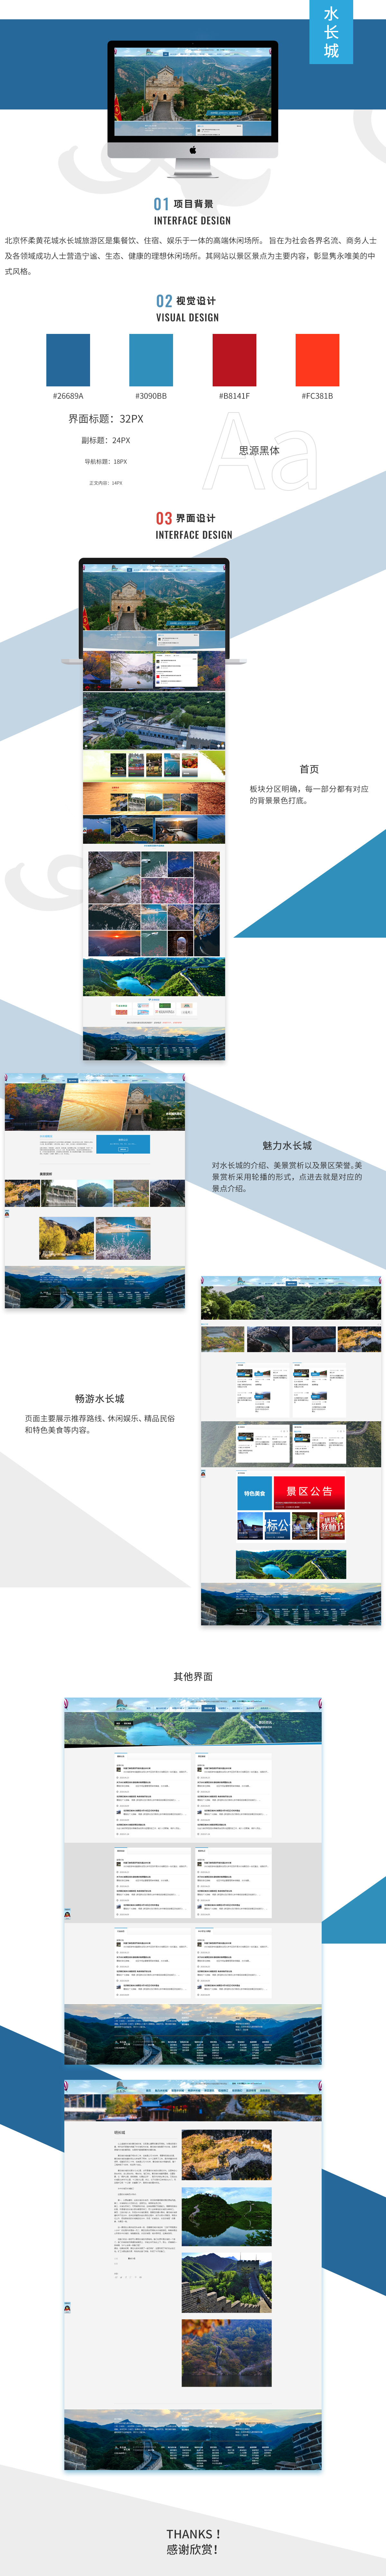 北京黄花城长城旅游开发有限责任公司网站案例